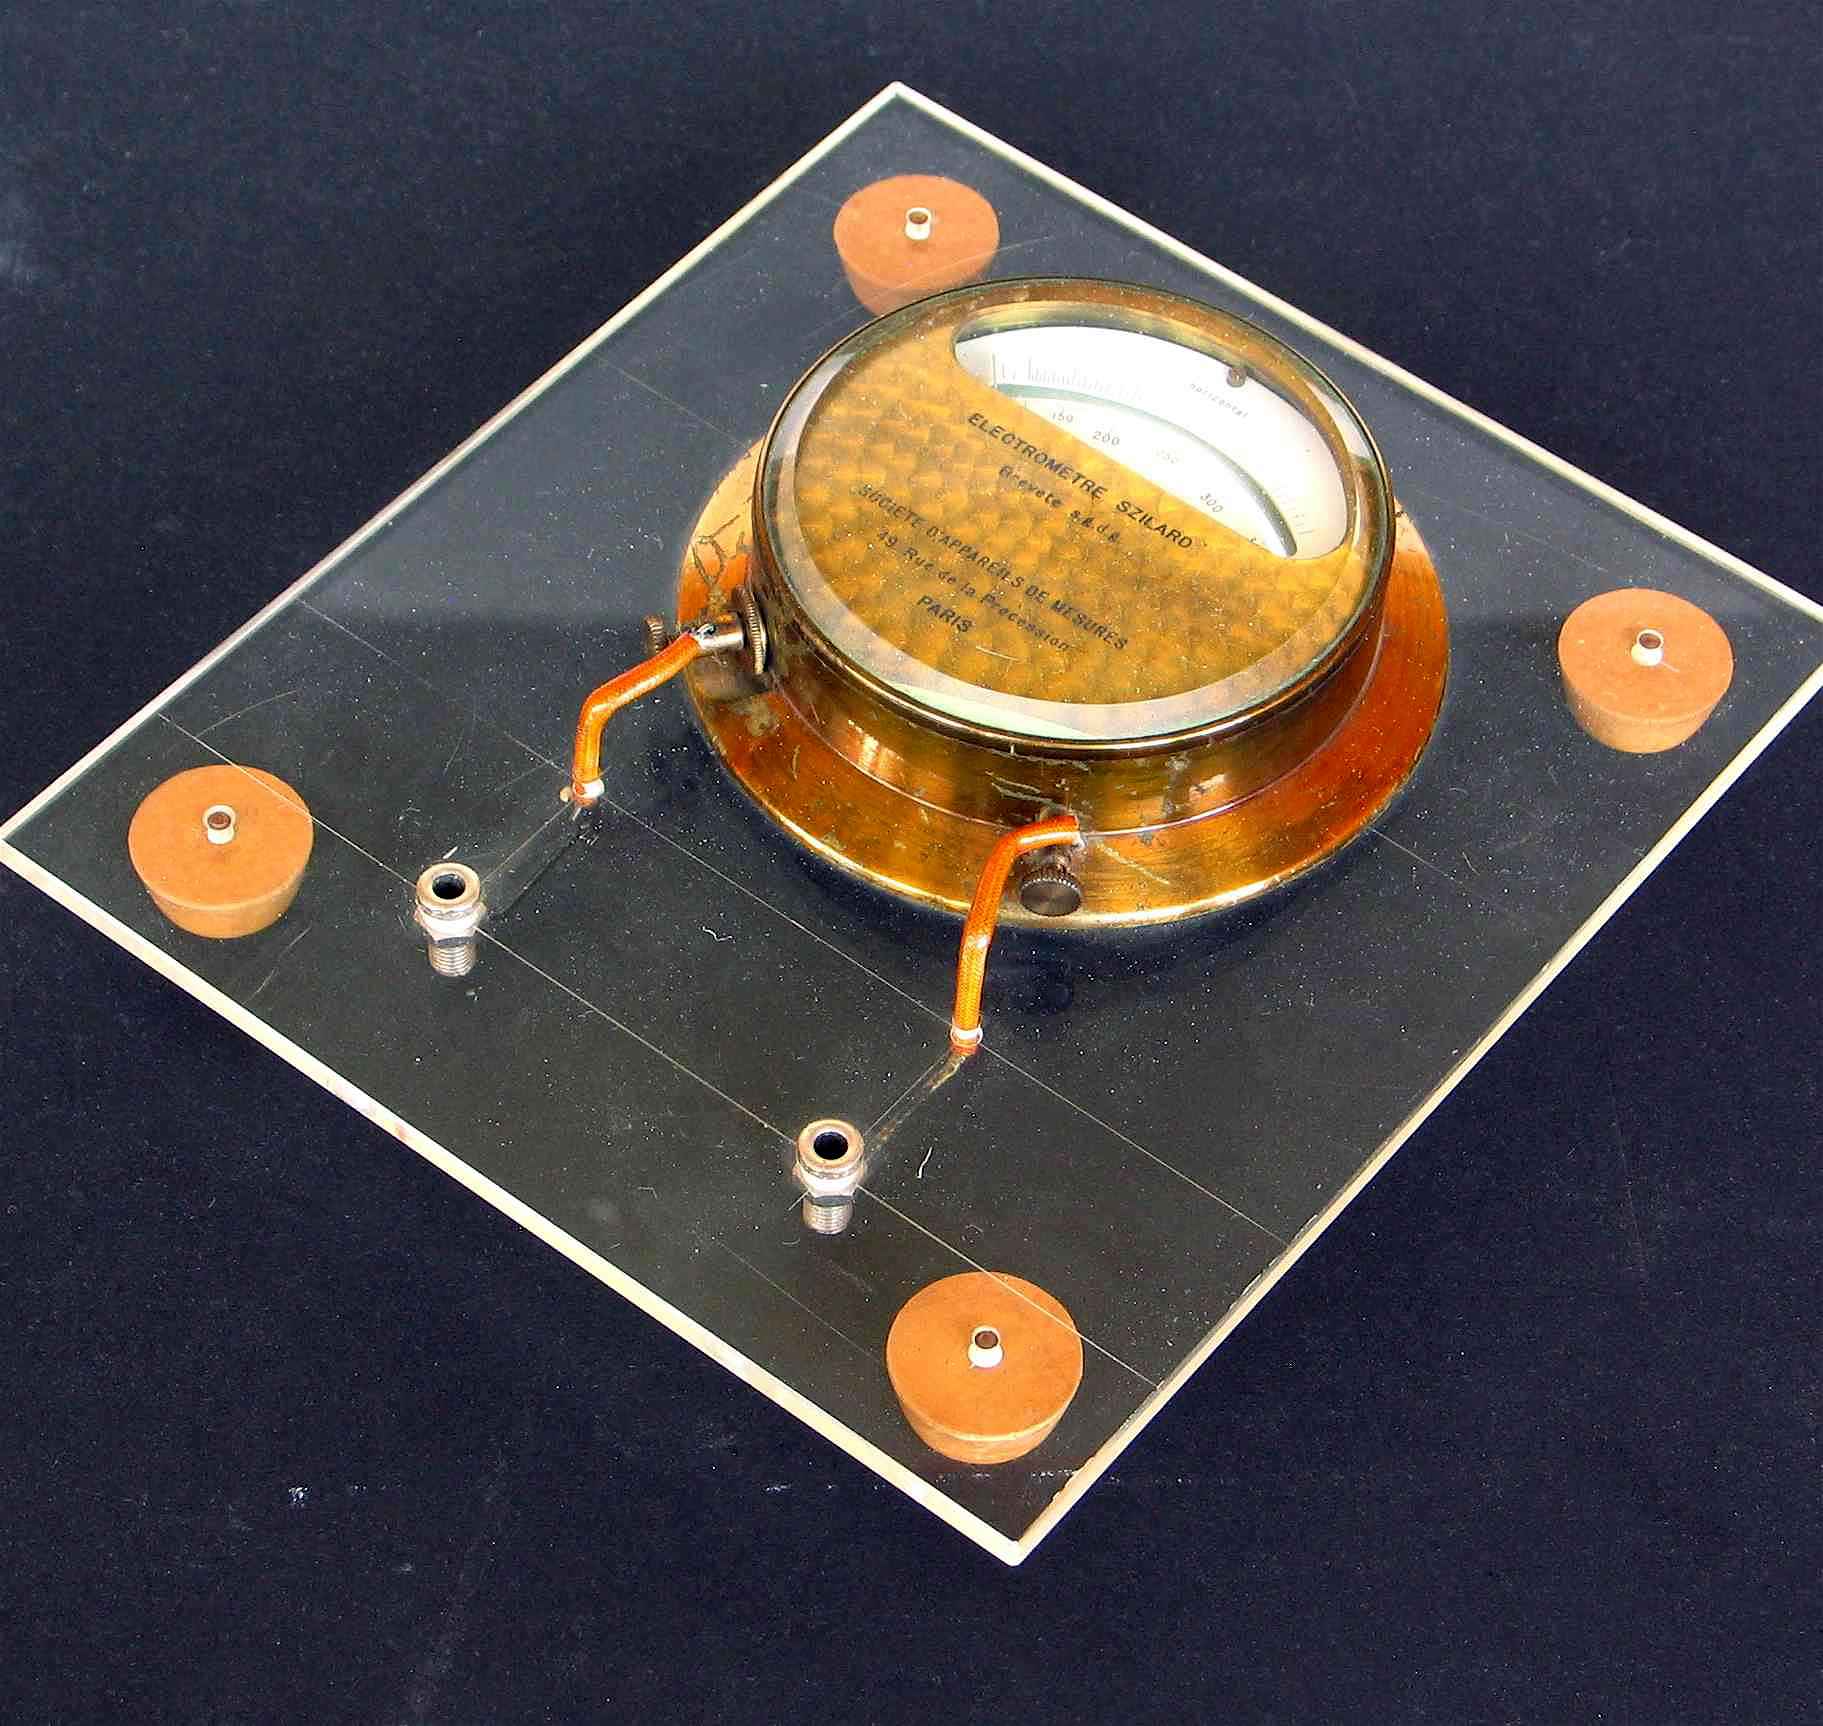 Voltmètre électrostatique
(selon [Bela] Szilard; 100 V à 340 V)